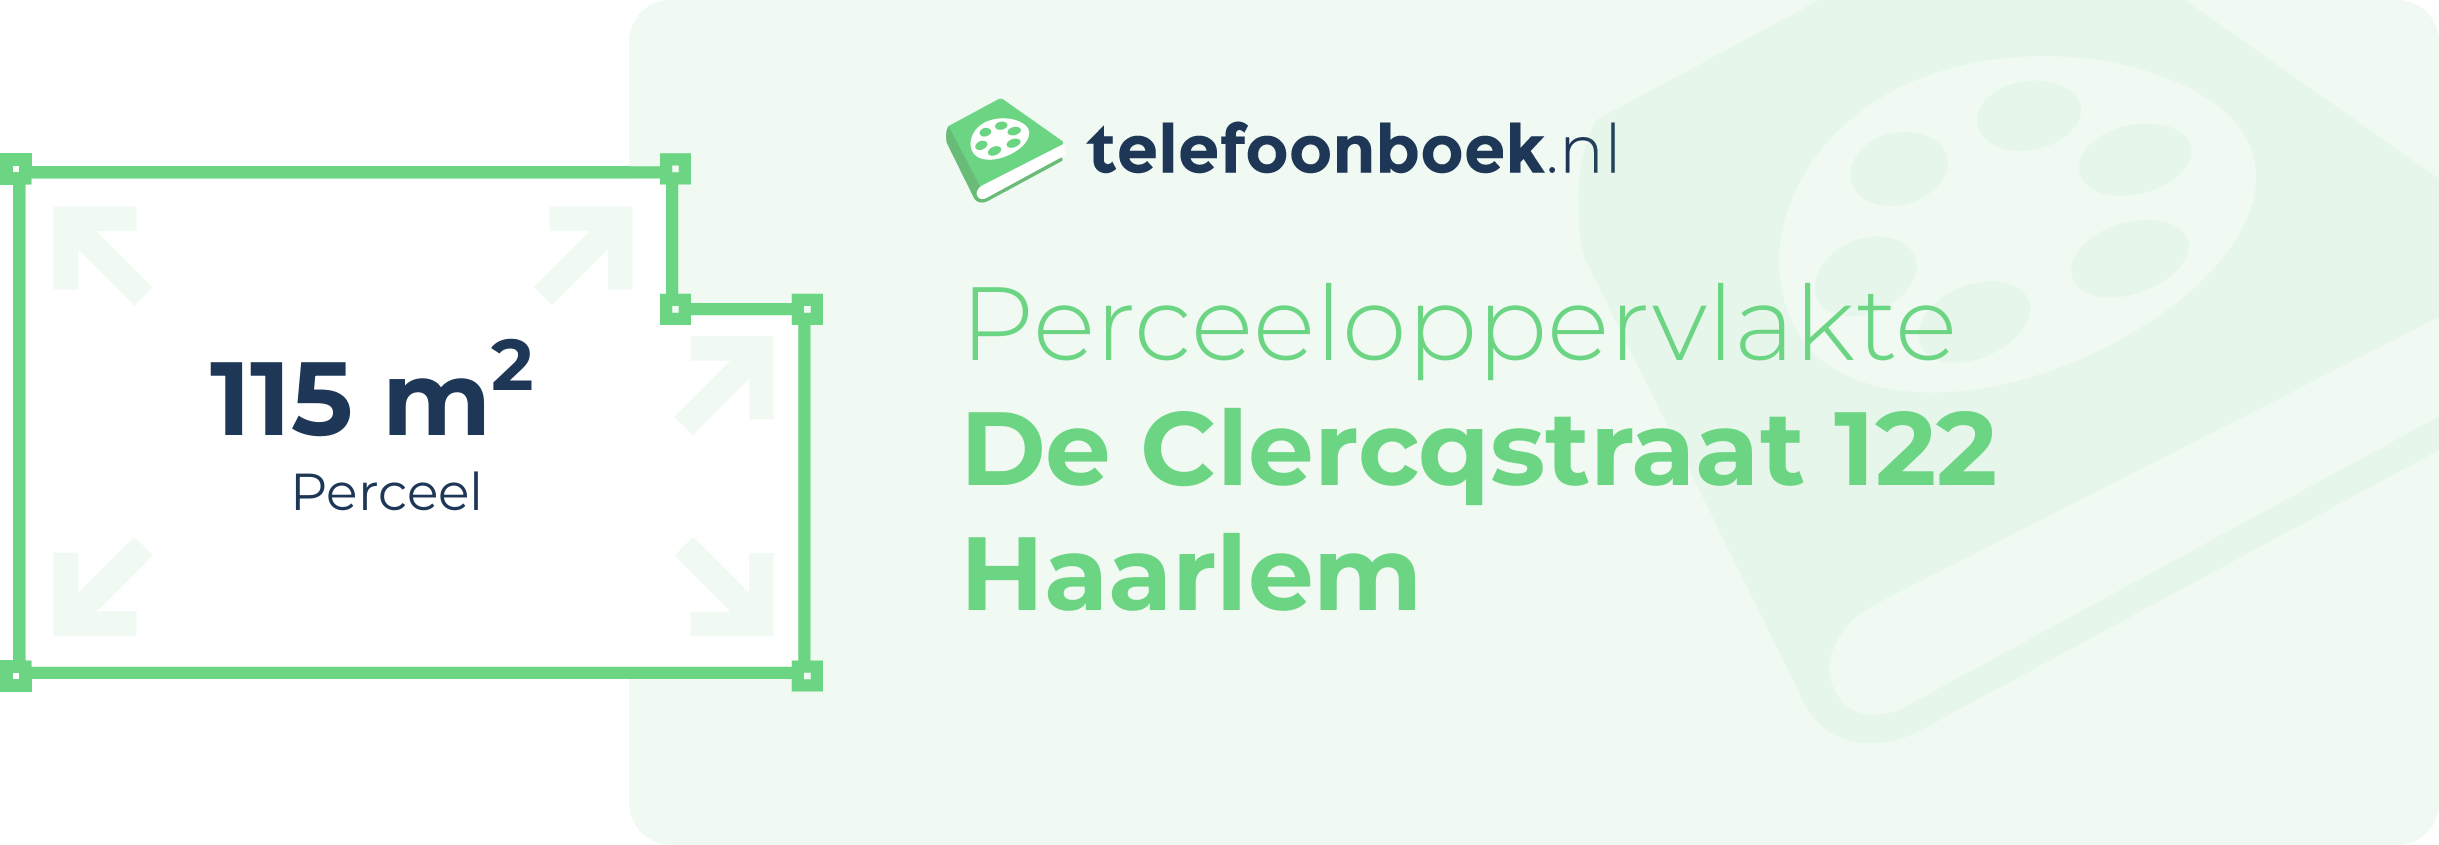 Perceeloppervlakte De Clercqstraat 122 Haarlem